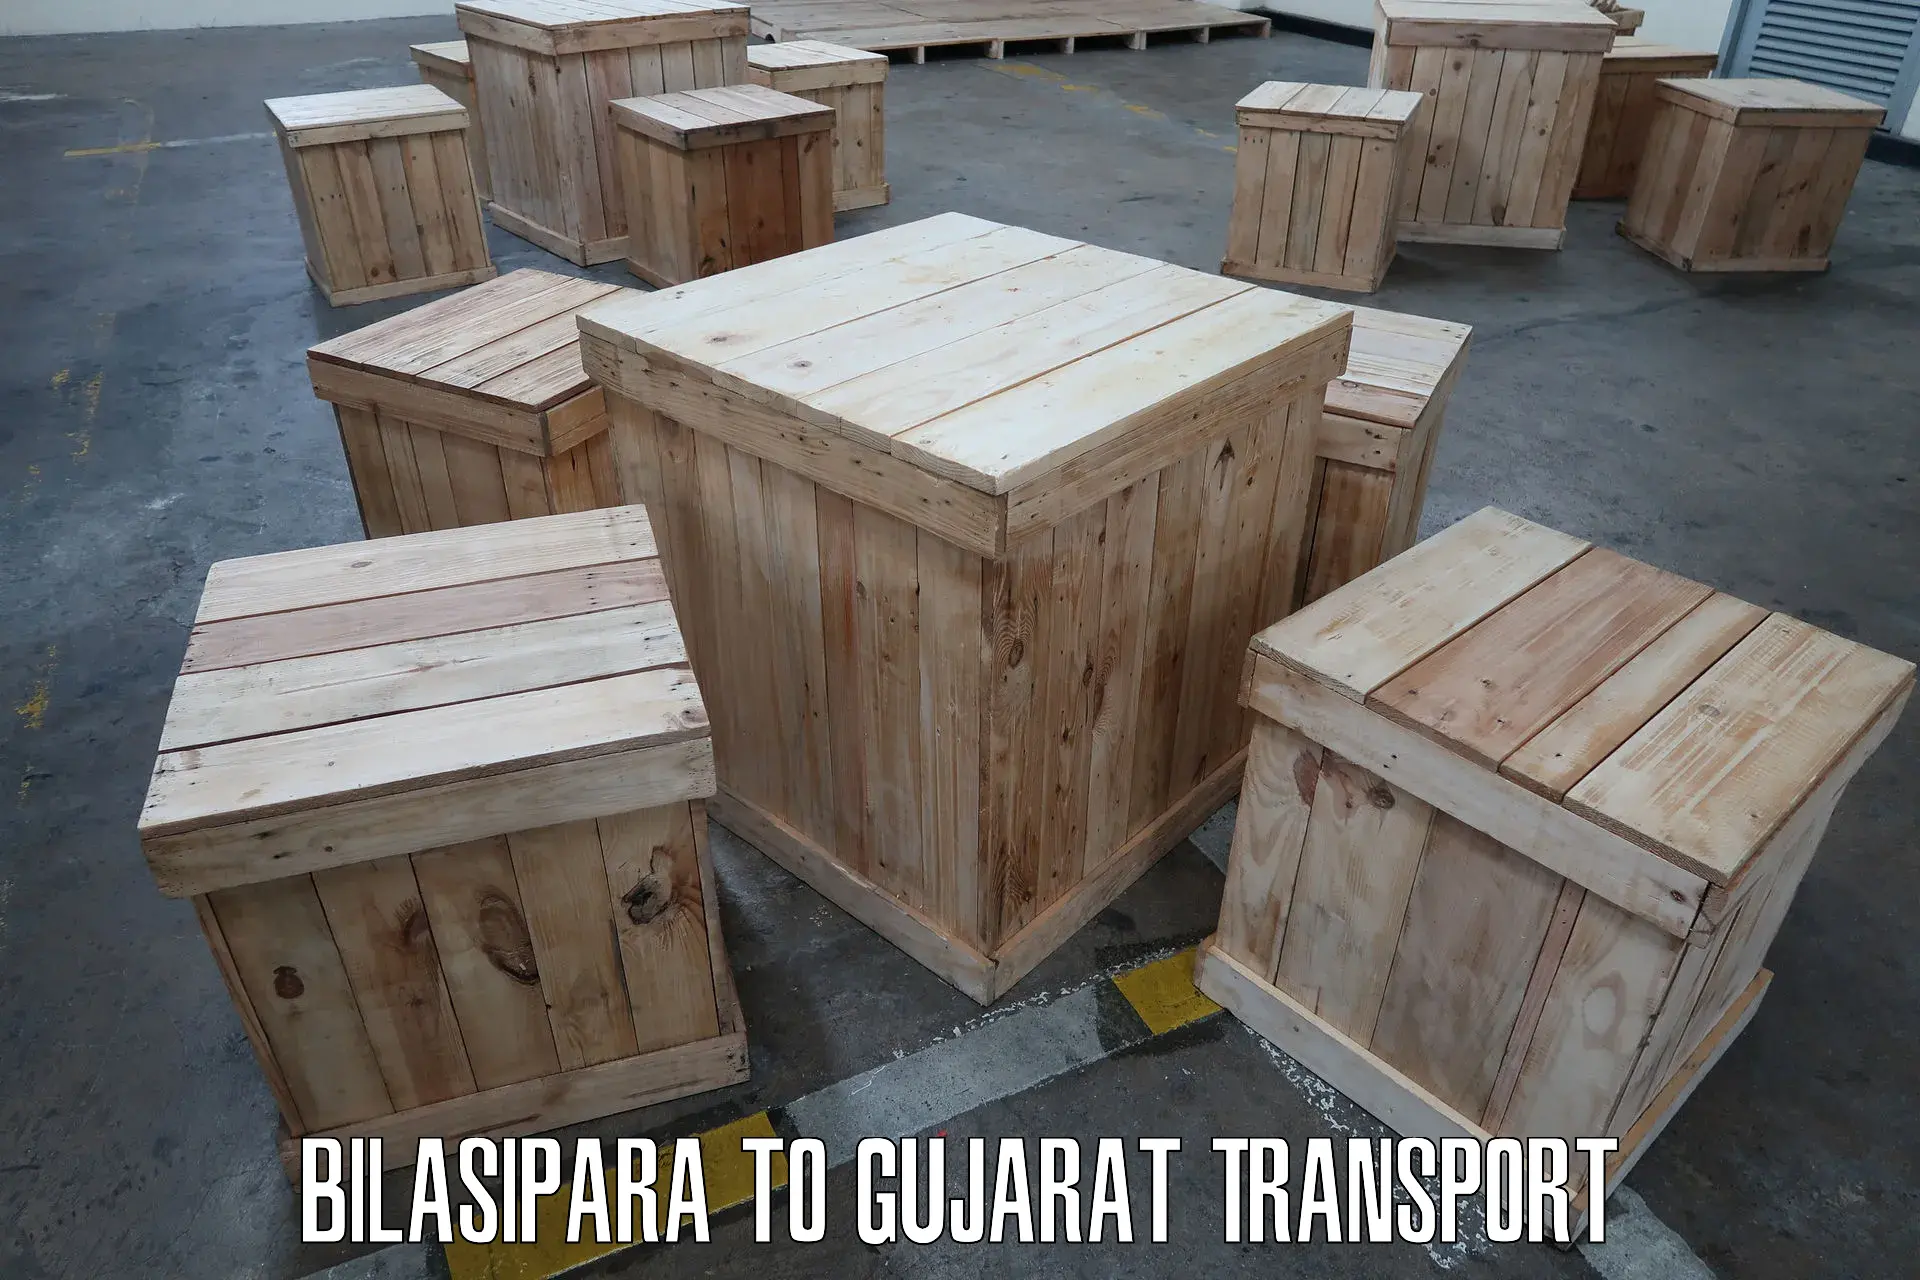 Bike shipping service Bilasipara to Dayapar